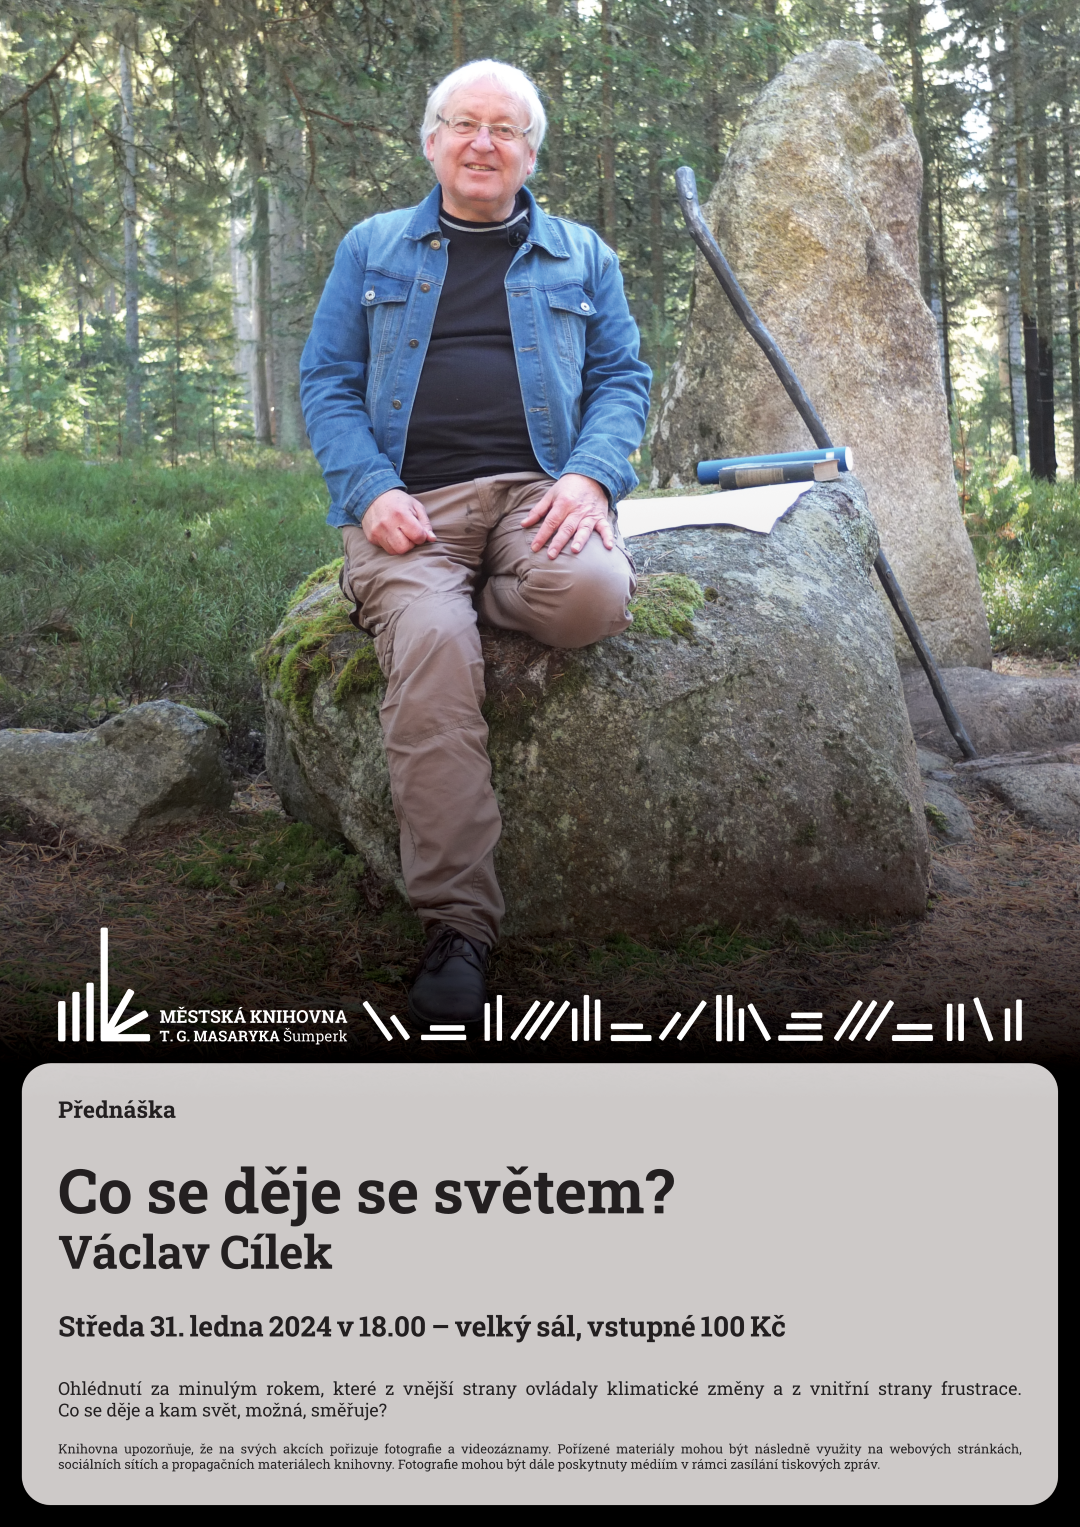 Plakát pro přednášku co se děje se světe m Václava Cílka